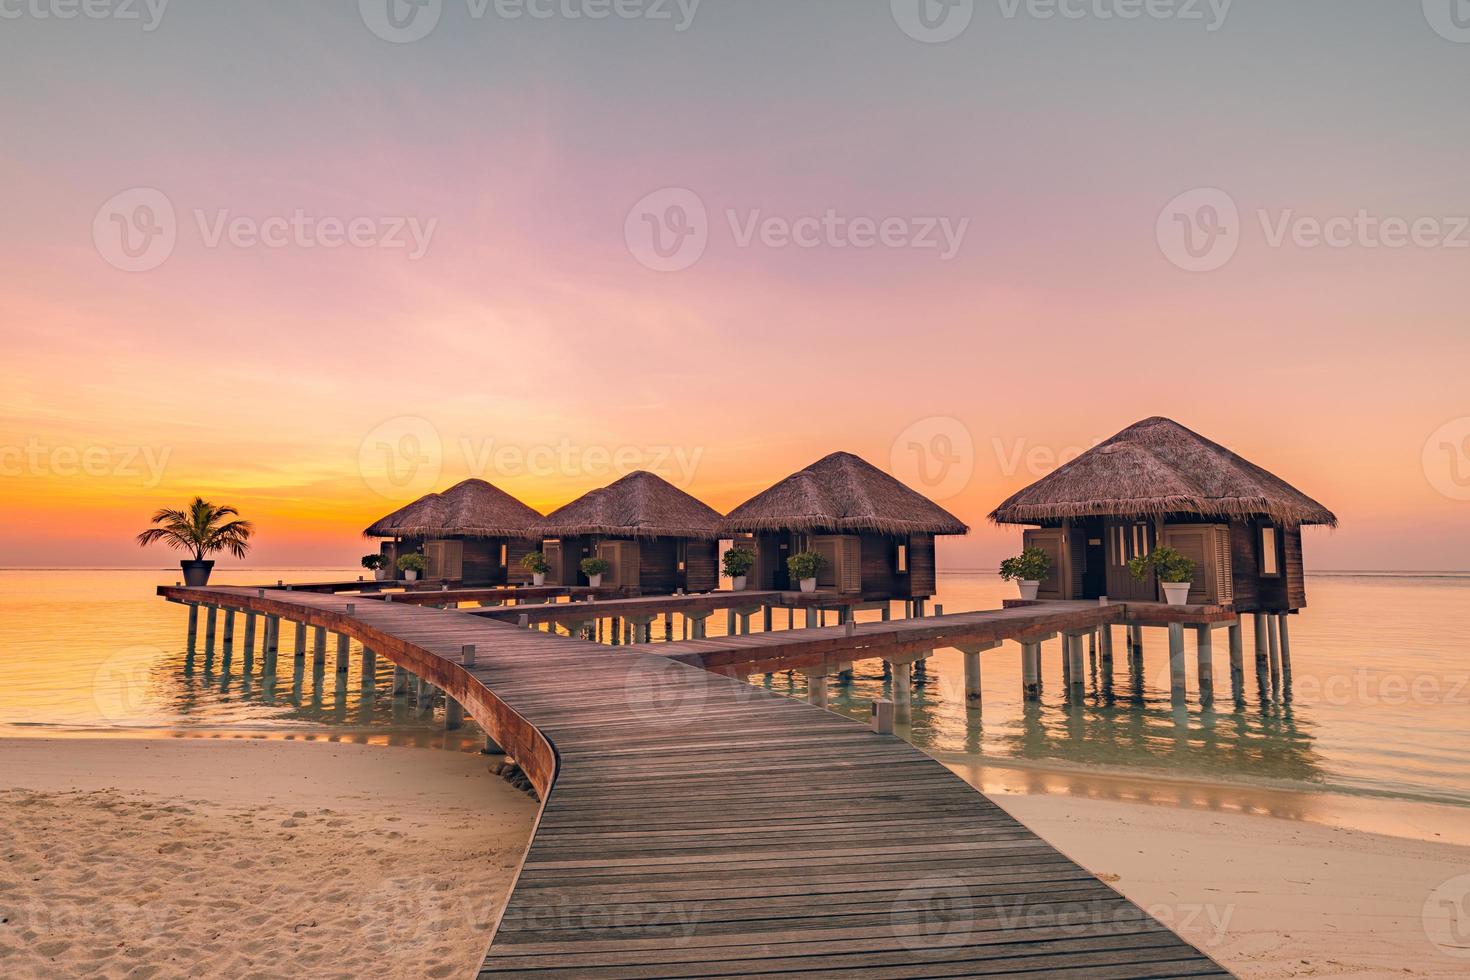 pôr do sol da ilha maldivas. resort de bangalôs de água na praia das ilhas. oceano índico, maldivas. bela paisagem por do sol, villas de resort de luxo e céu colorido. férias de férias de verão e conceito de viagens foto